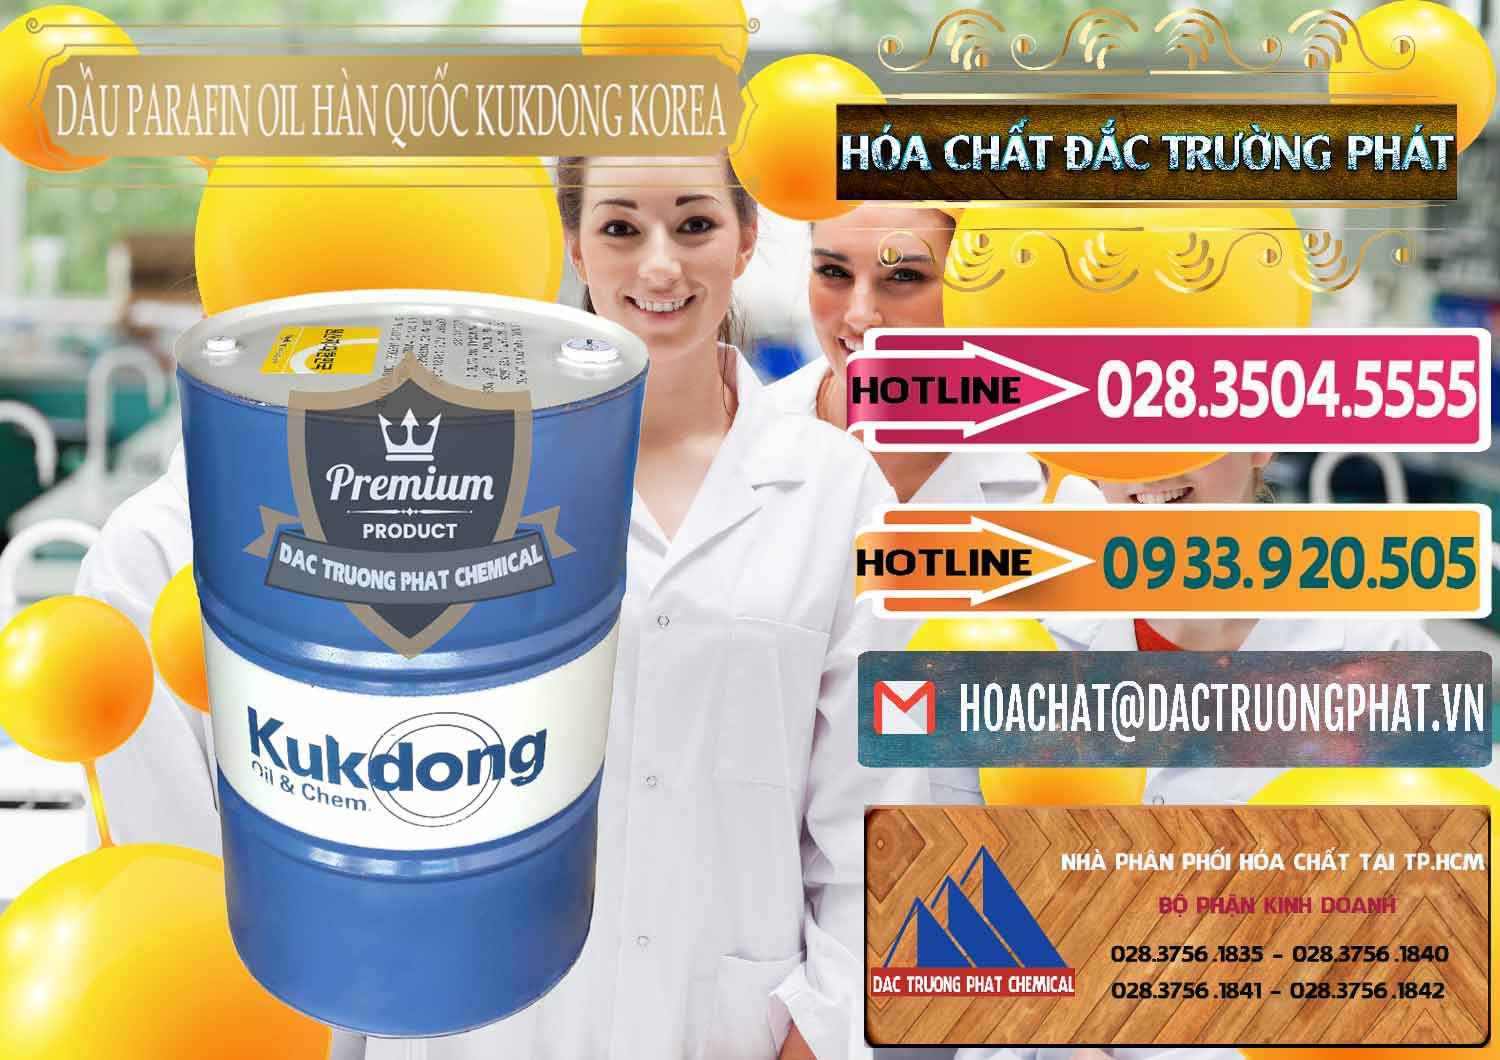 Đơn vị cung cấp & bán Dầu Parafin Oil Hàn Quốc Korea Kukdong - 0060 - Chuyên phân phối - kinh doanh hóa chất tại TP.HCM - dactruongphat.vn